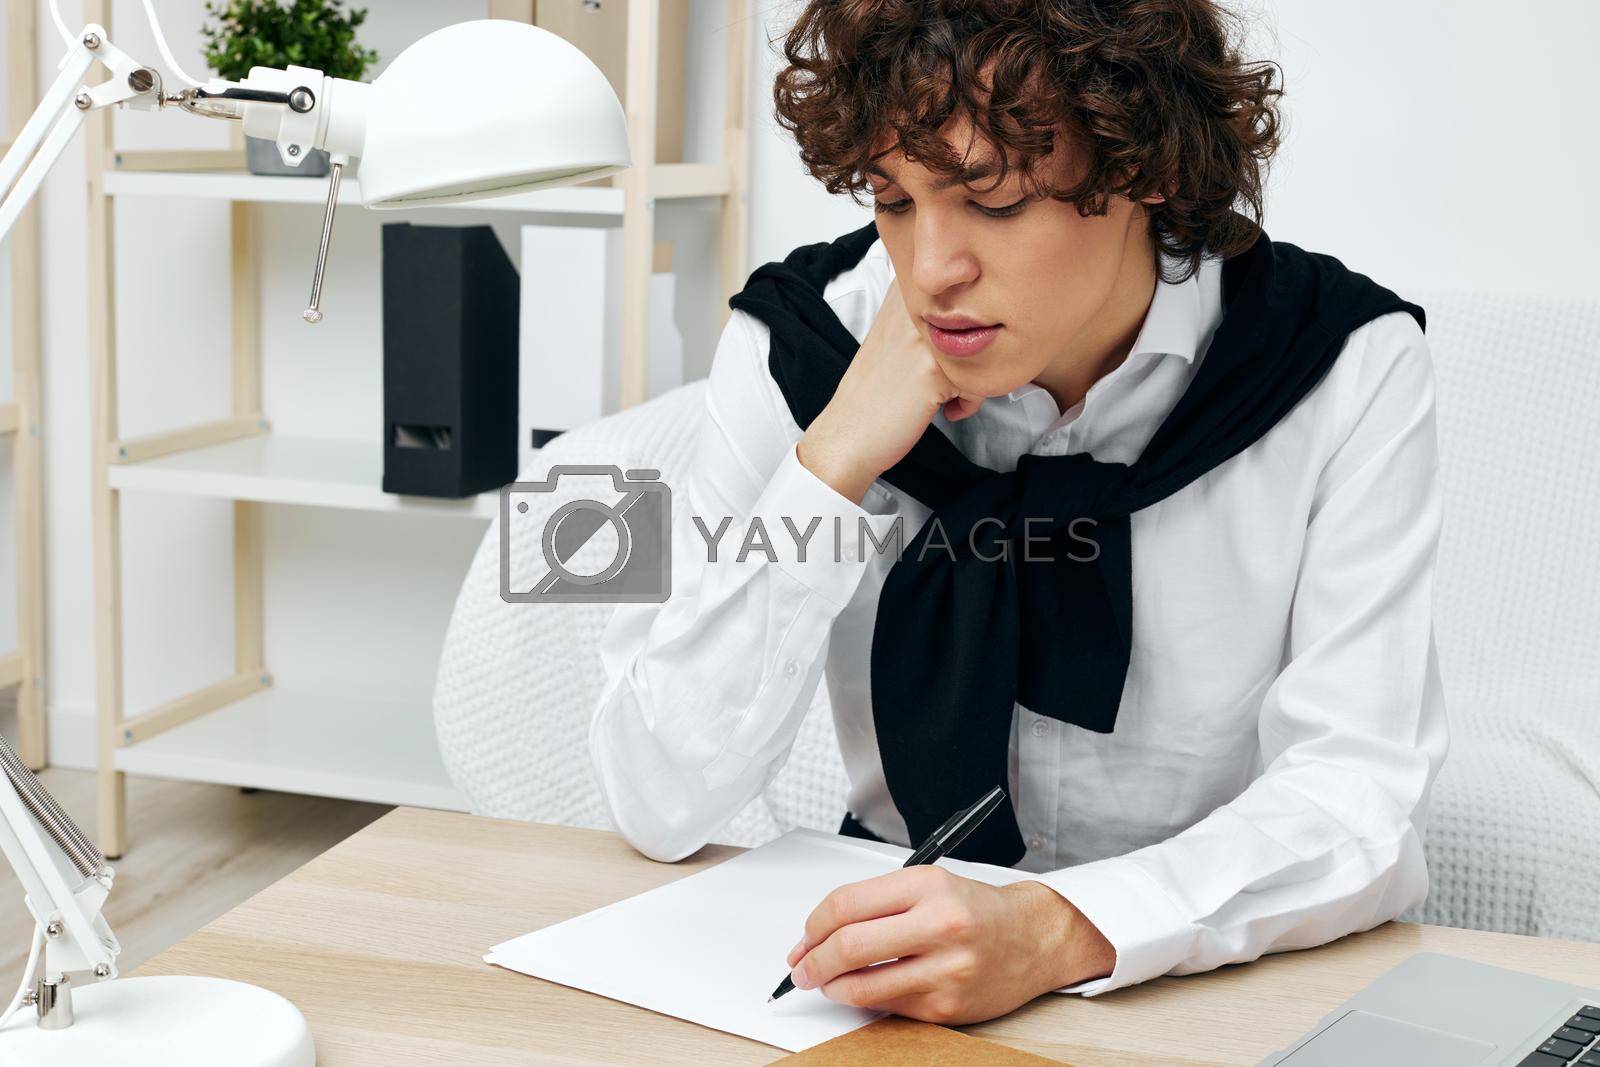 guy laptop sitting on white sofa online training communication. High quality photo